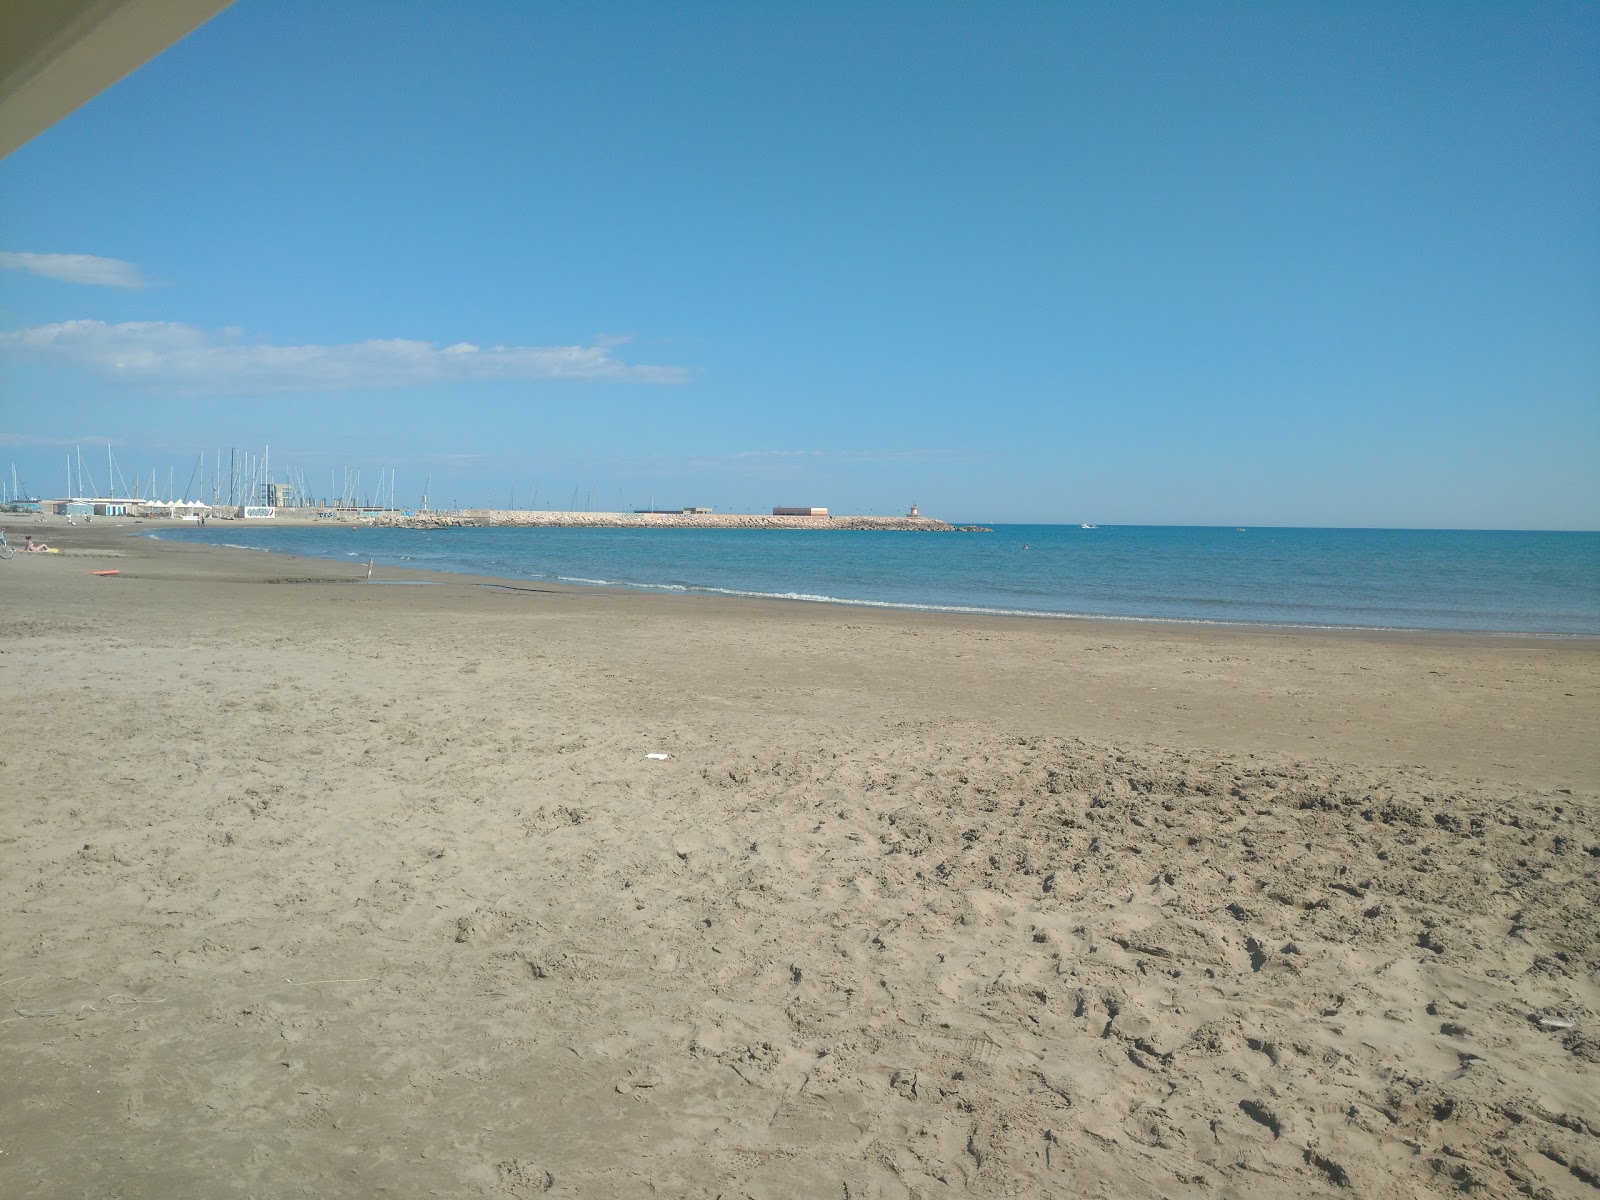 Fotografie cu Nettuno beach zonă de stațiune de pe plajă